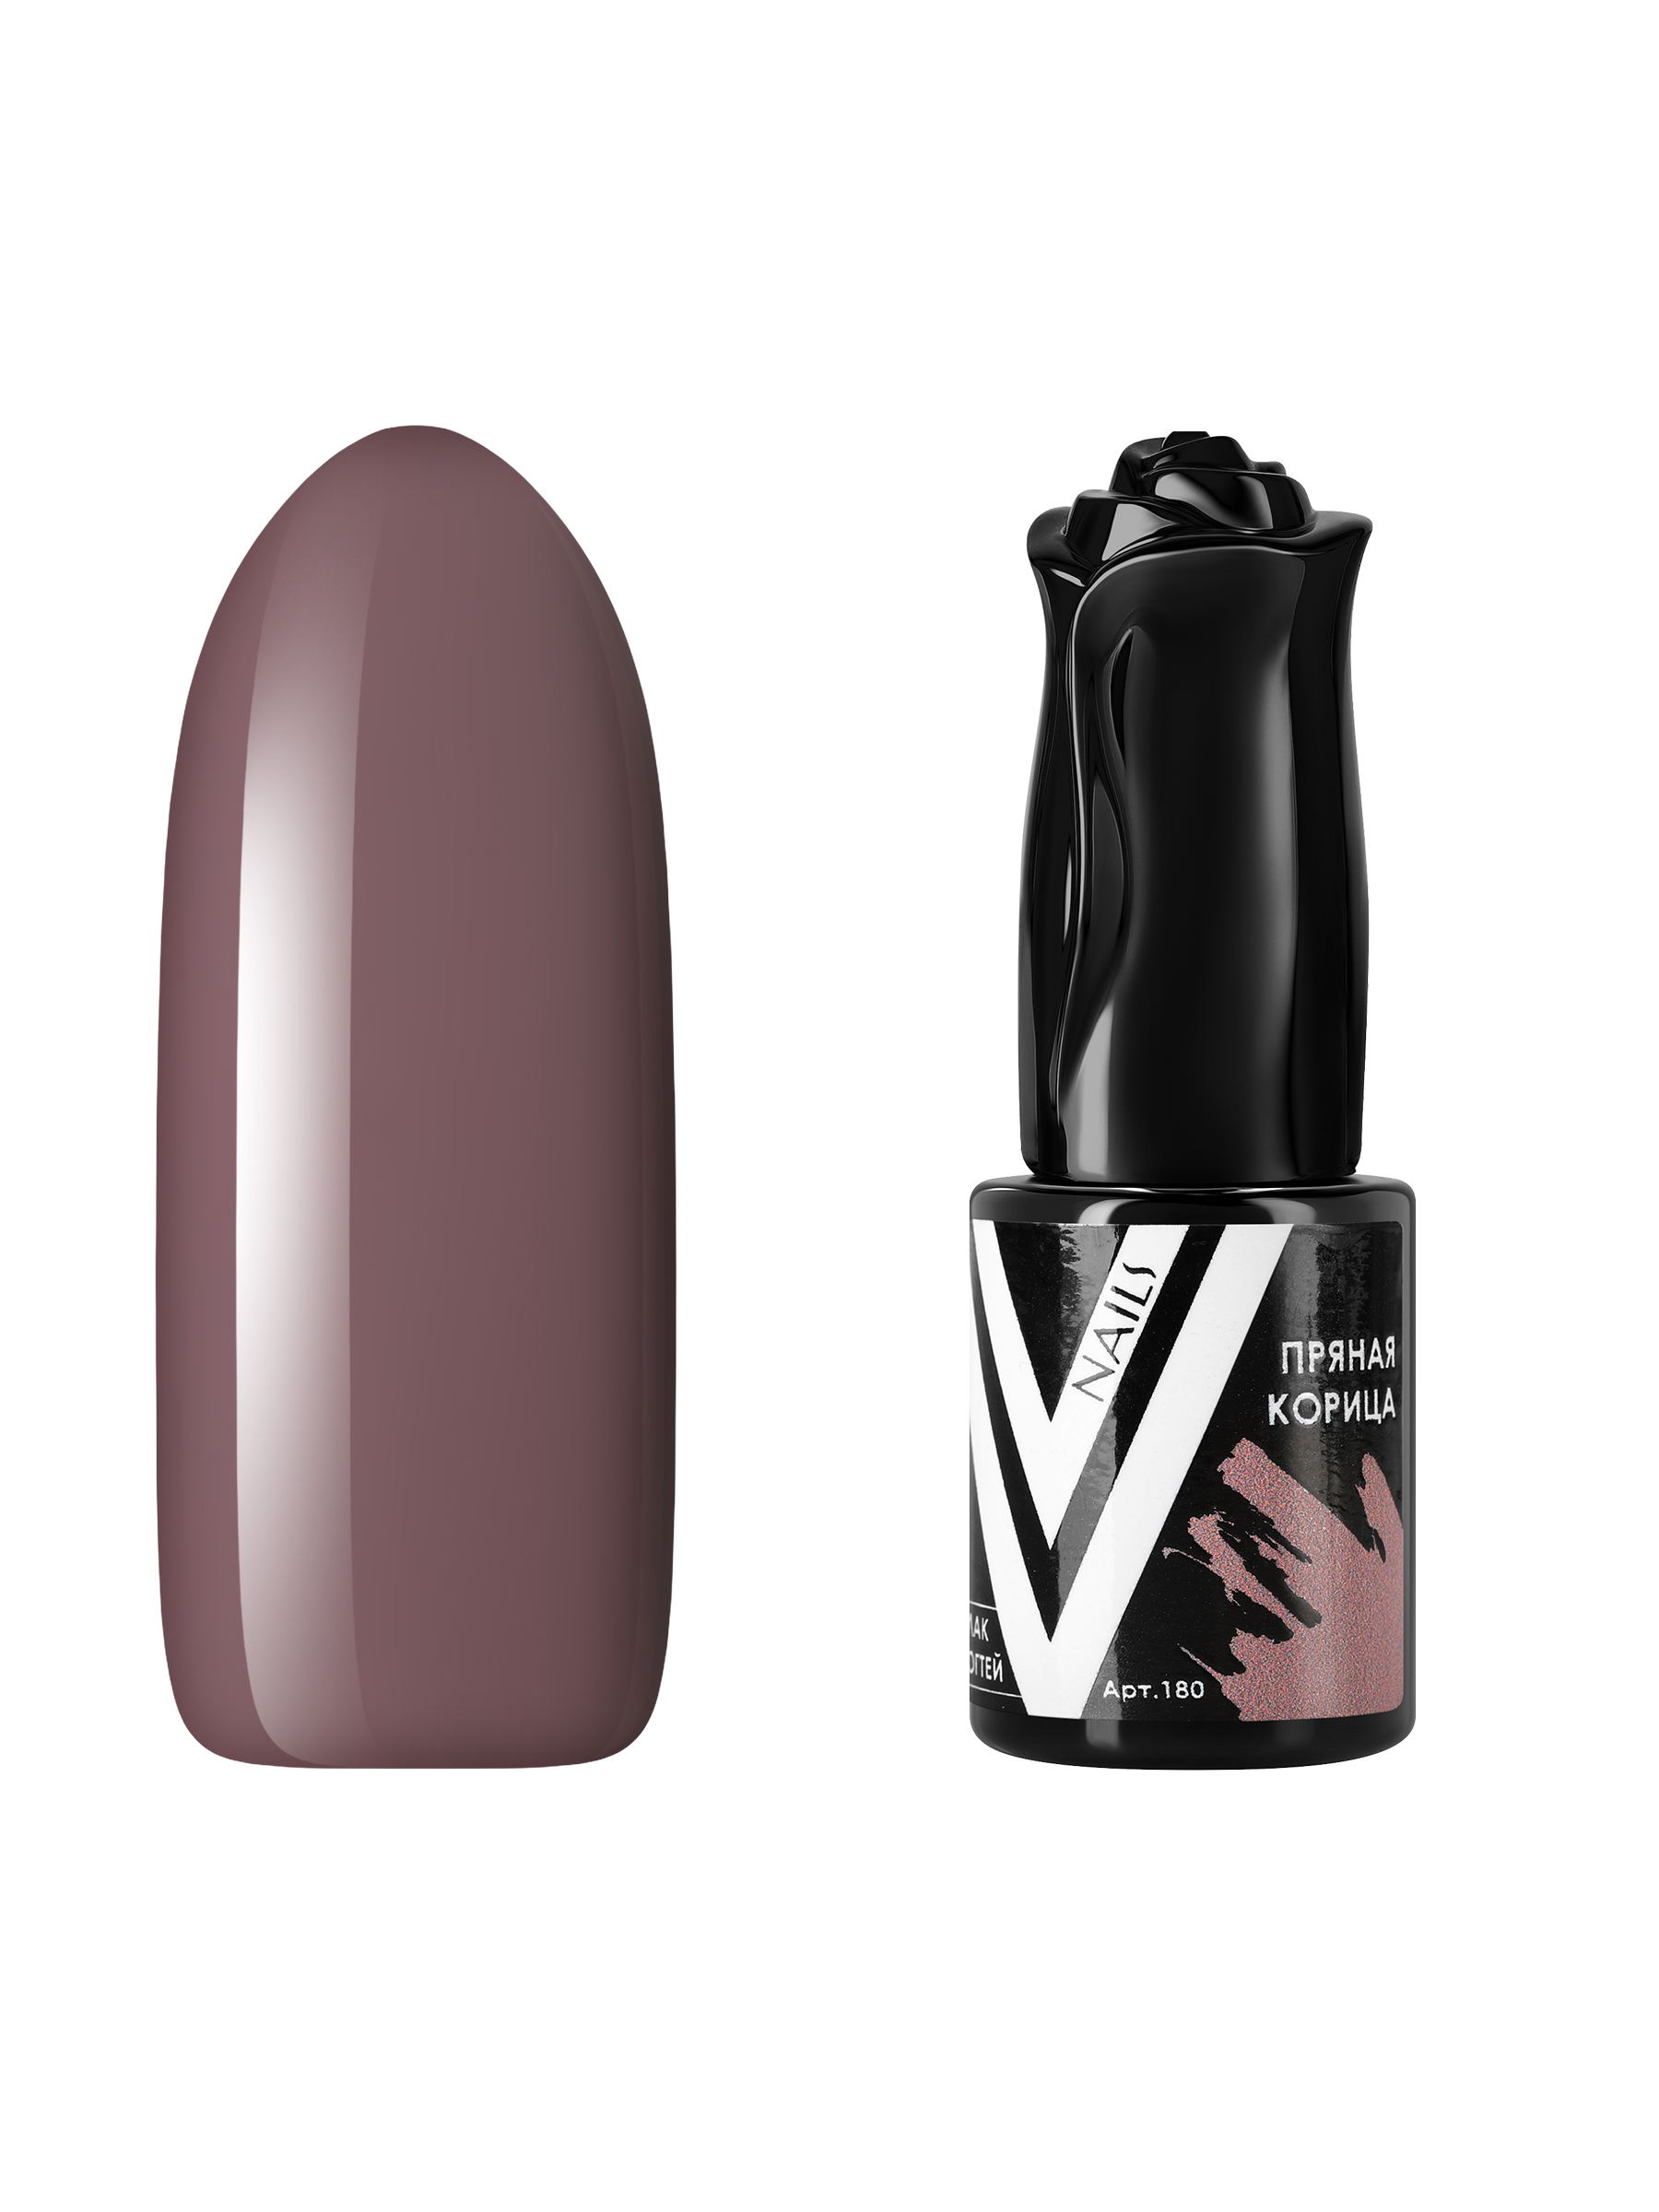 Гель-лак для ногтей Vogue Nails плотный, темный, самовыравнивающийся, бежевый, 10 мл гель лак pashe nude collection 14 камуфлирующий бежевый 9 мл